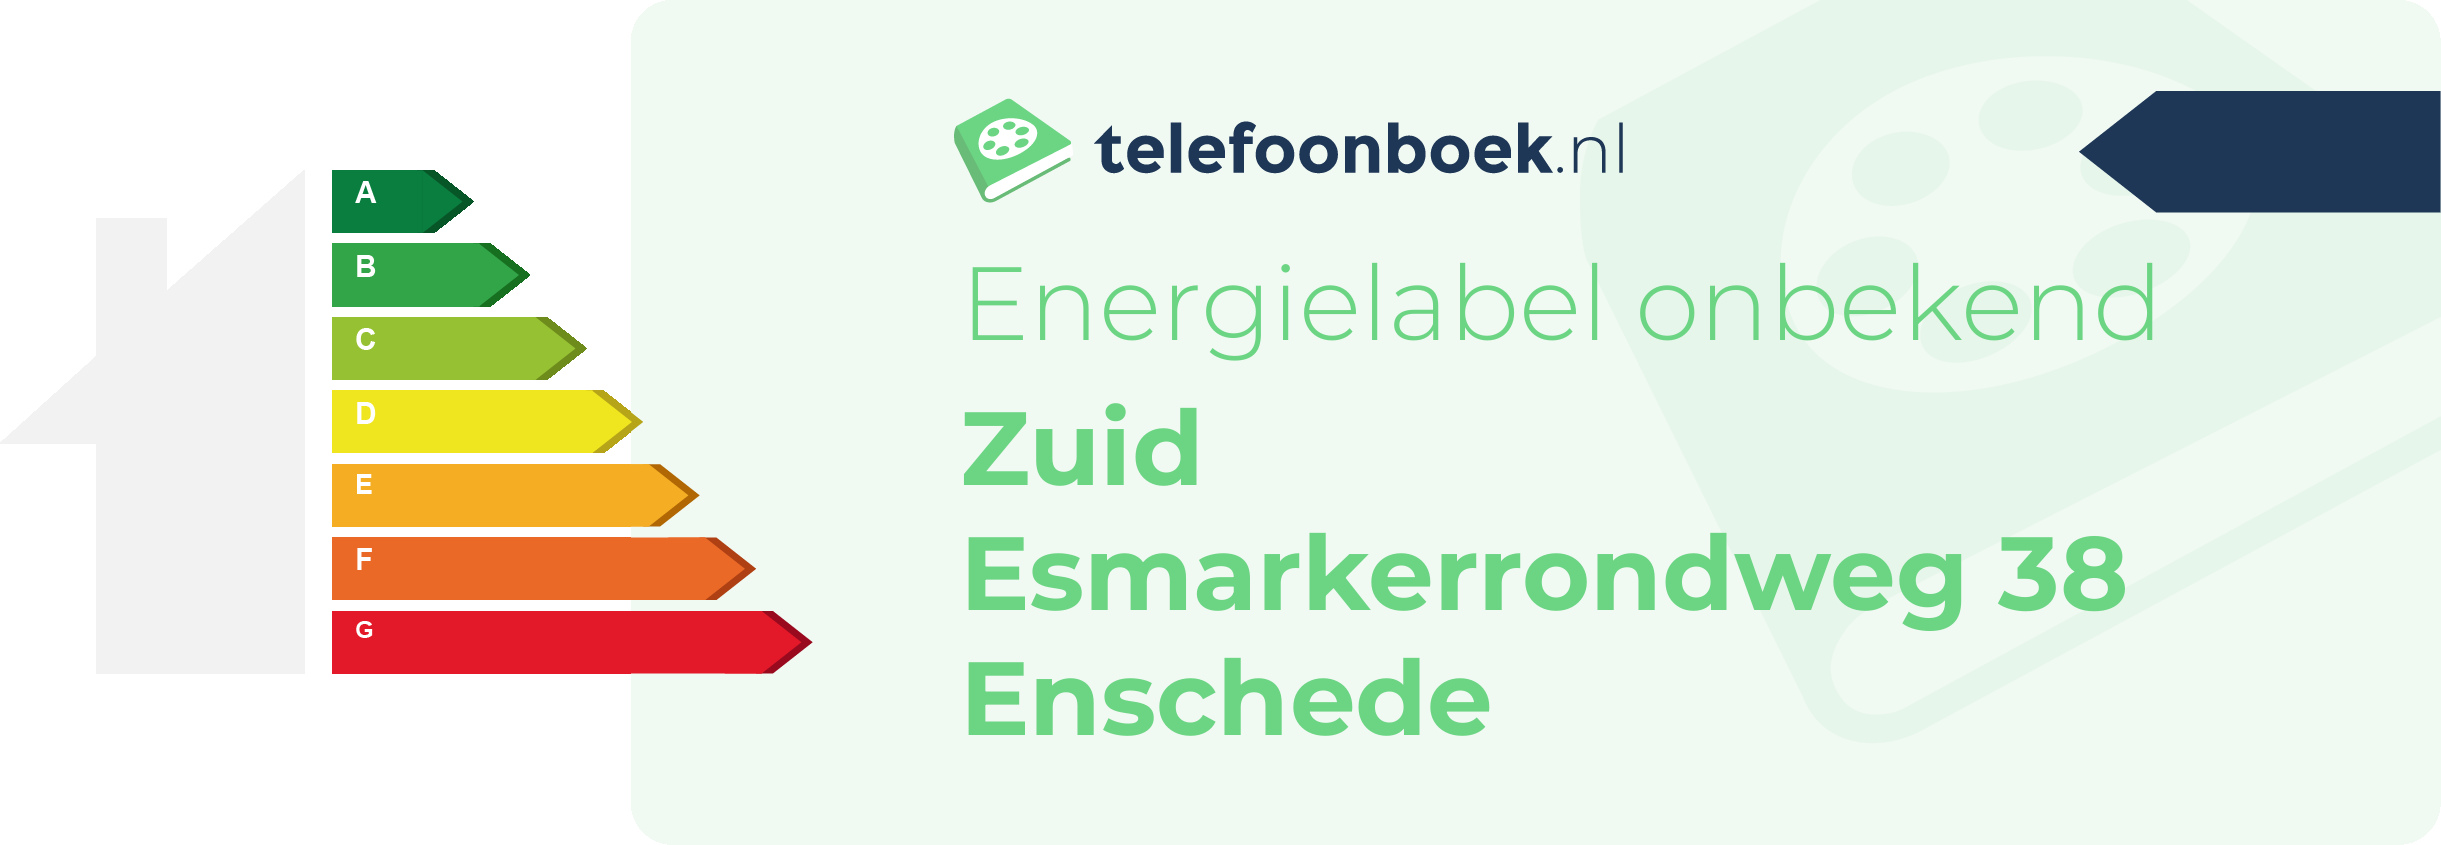 Energielabel Zuid Esmarkerrondweg 38 Enschede